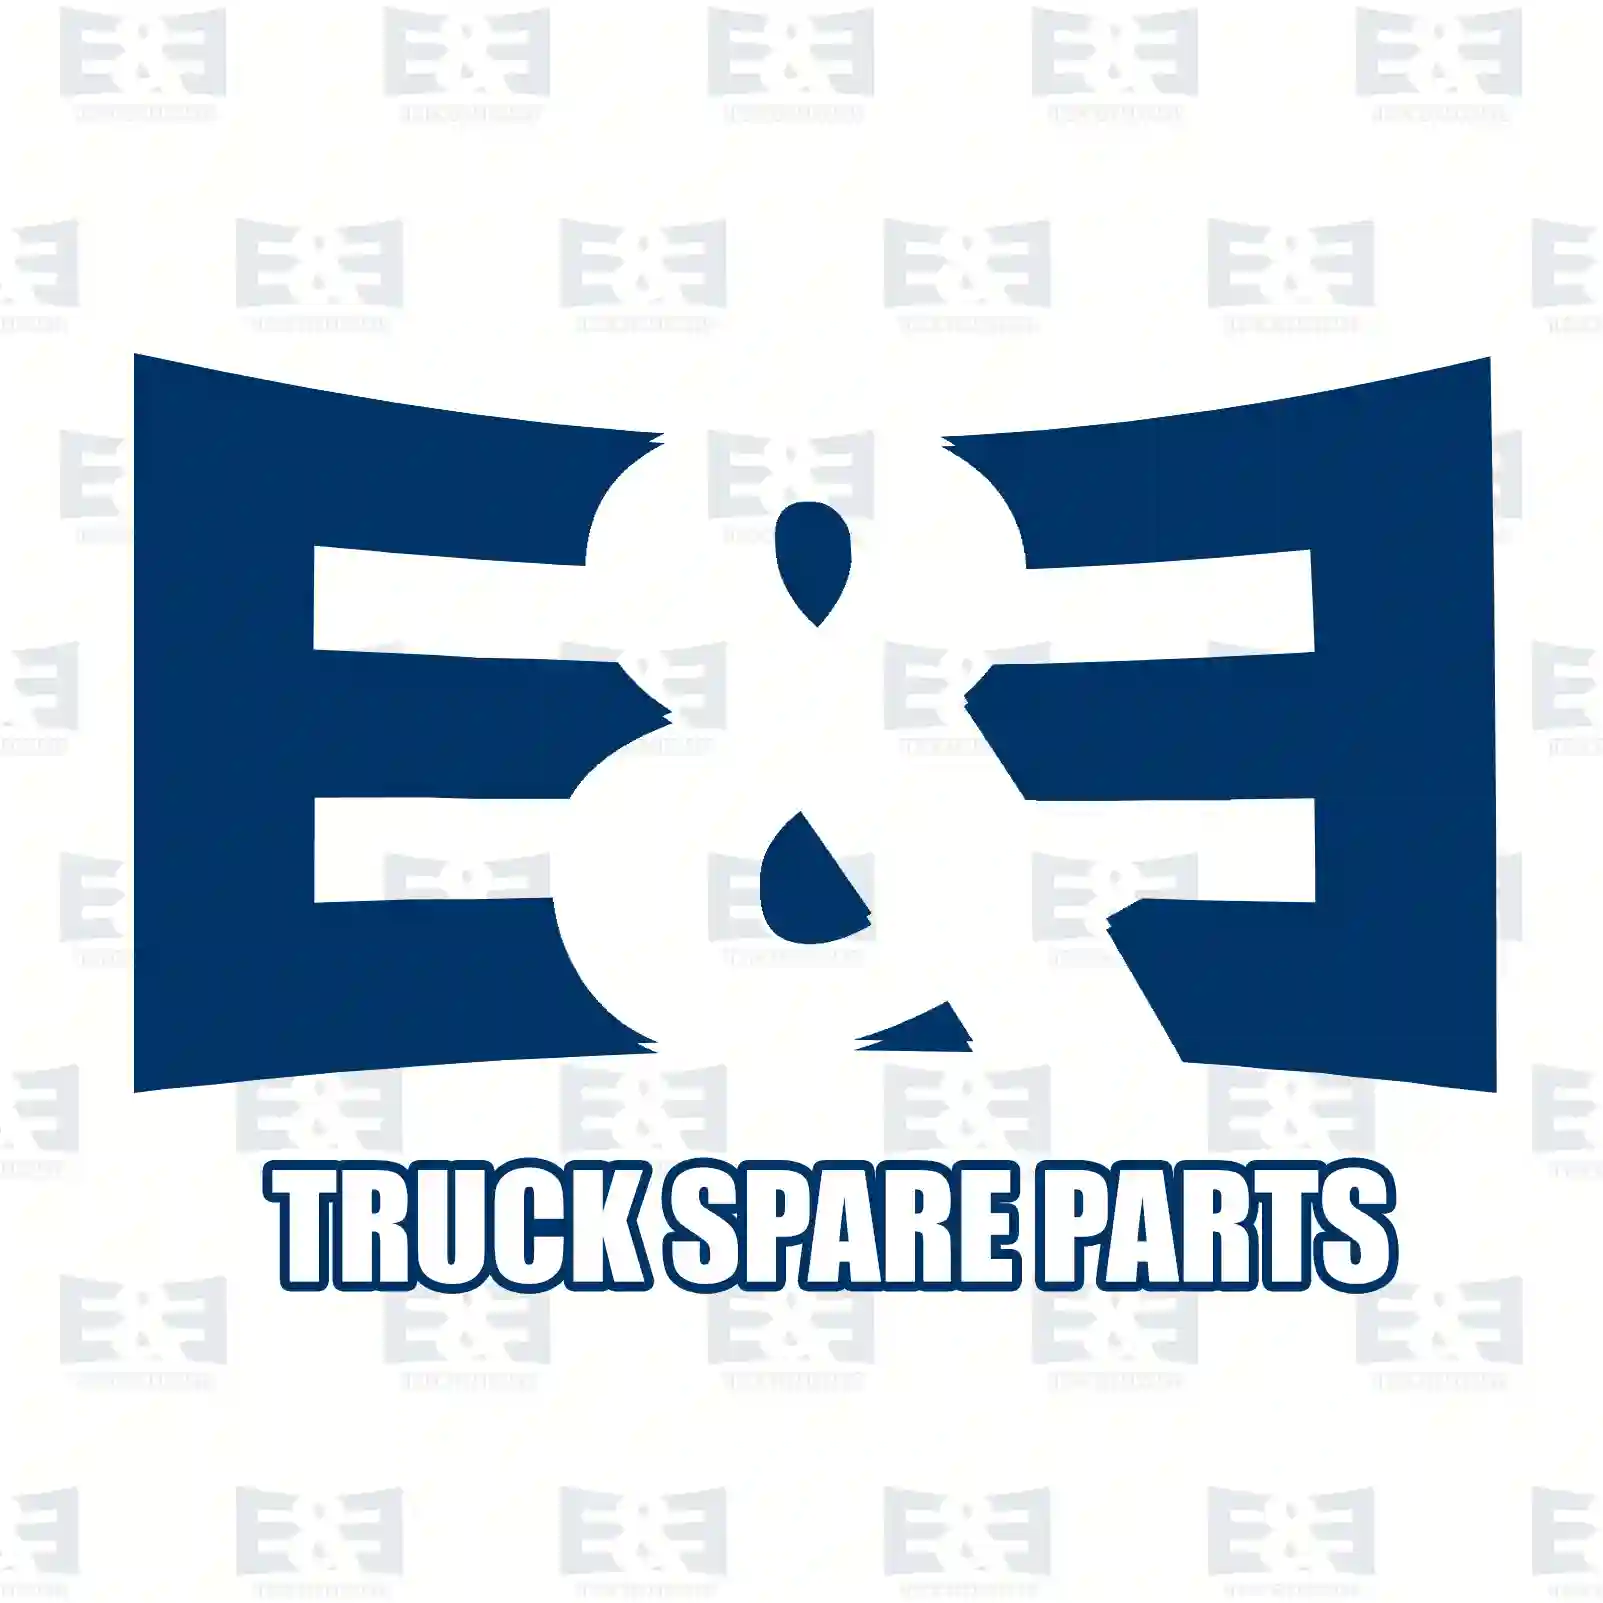 Thermostat, 2E2203414, 11531265086, 51064020042, 51064020052, 51064020054, 51064020057, 51064020062, 51064020065, 51064020068, 0022033975, 3412030475, 3412037075, 631403720, ZG00667-0008 ||  2E2203414 E&E Truck Spare Parts | Truck Spare Parts, Auotomotive Spare Parts Thermostat, 2E2203414, 11531265086, 51064020042, 51064020052, 51064020054, 51064020057, 51064020062, 51064020065, 51064020068, 0022033975, 3412030475, 3412037075, 631403720, ZG00667-0008 ||  2E2203414 E&E Truck Spare Parts | Truck Spare Parts, Auotomotive Spare Parts